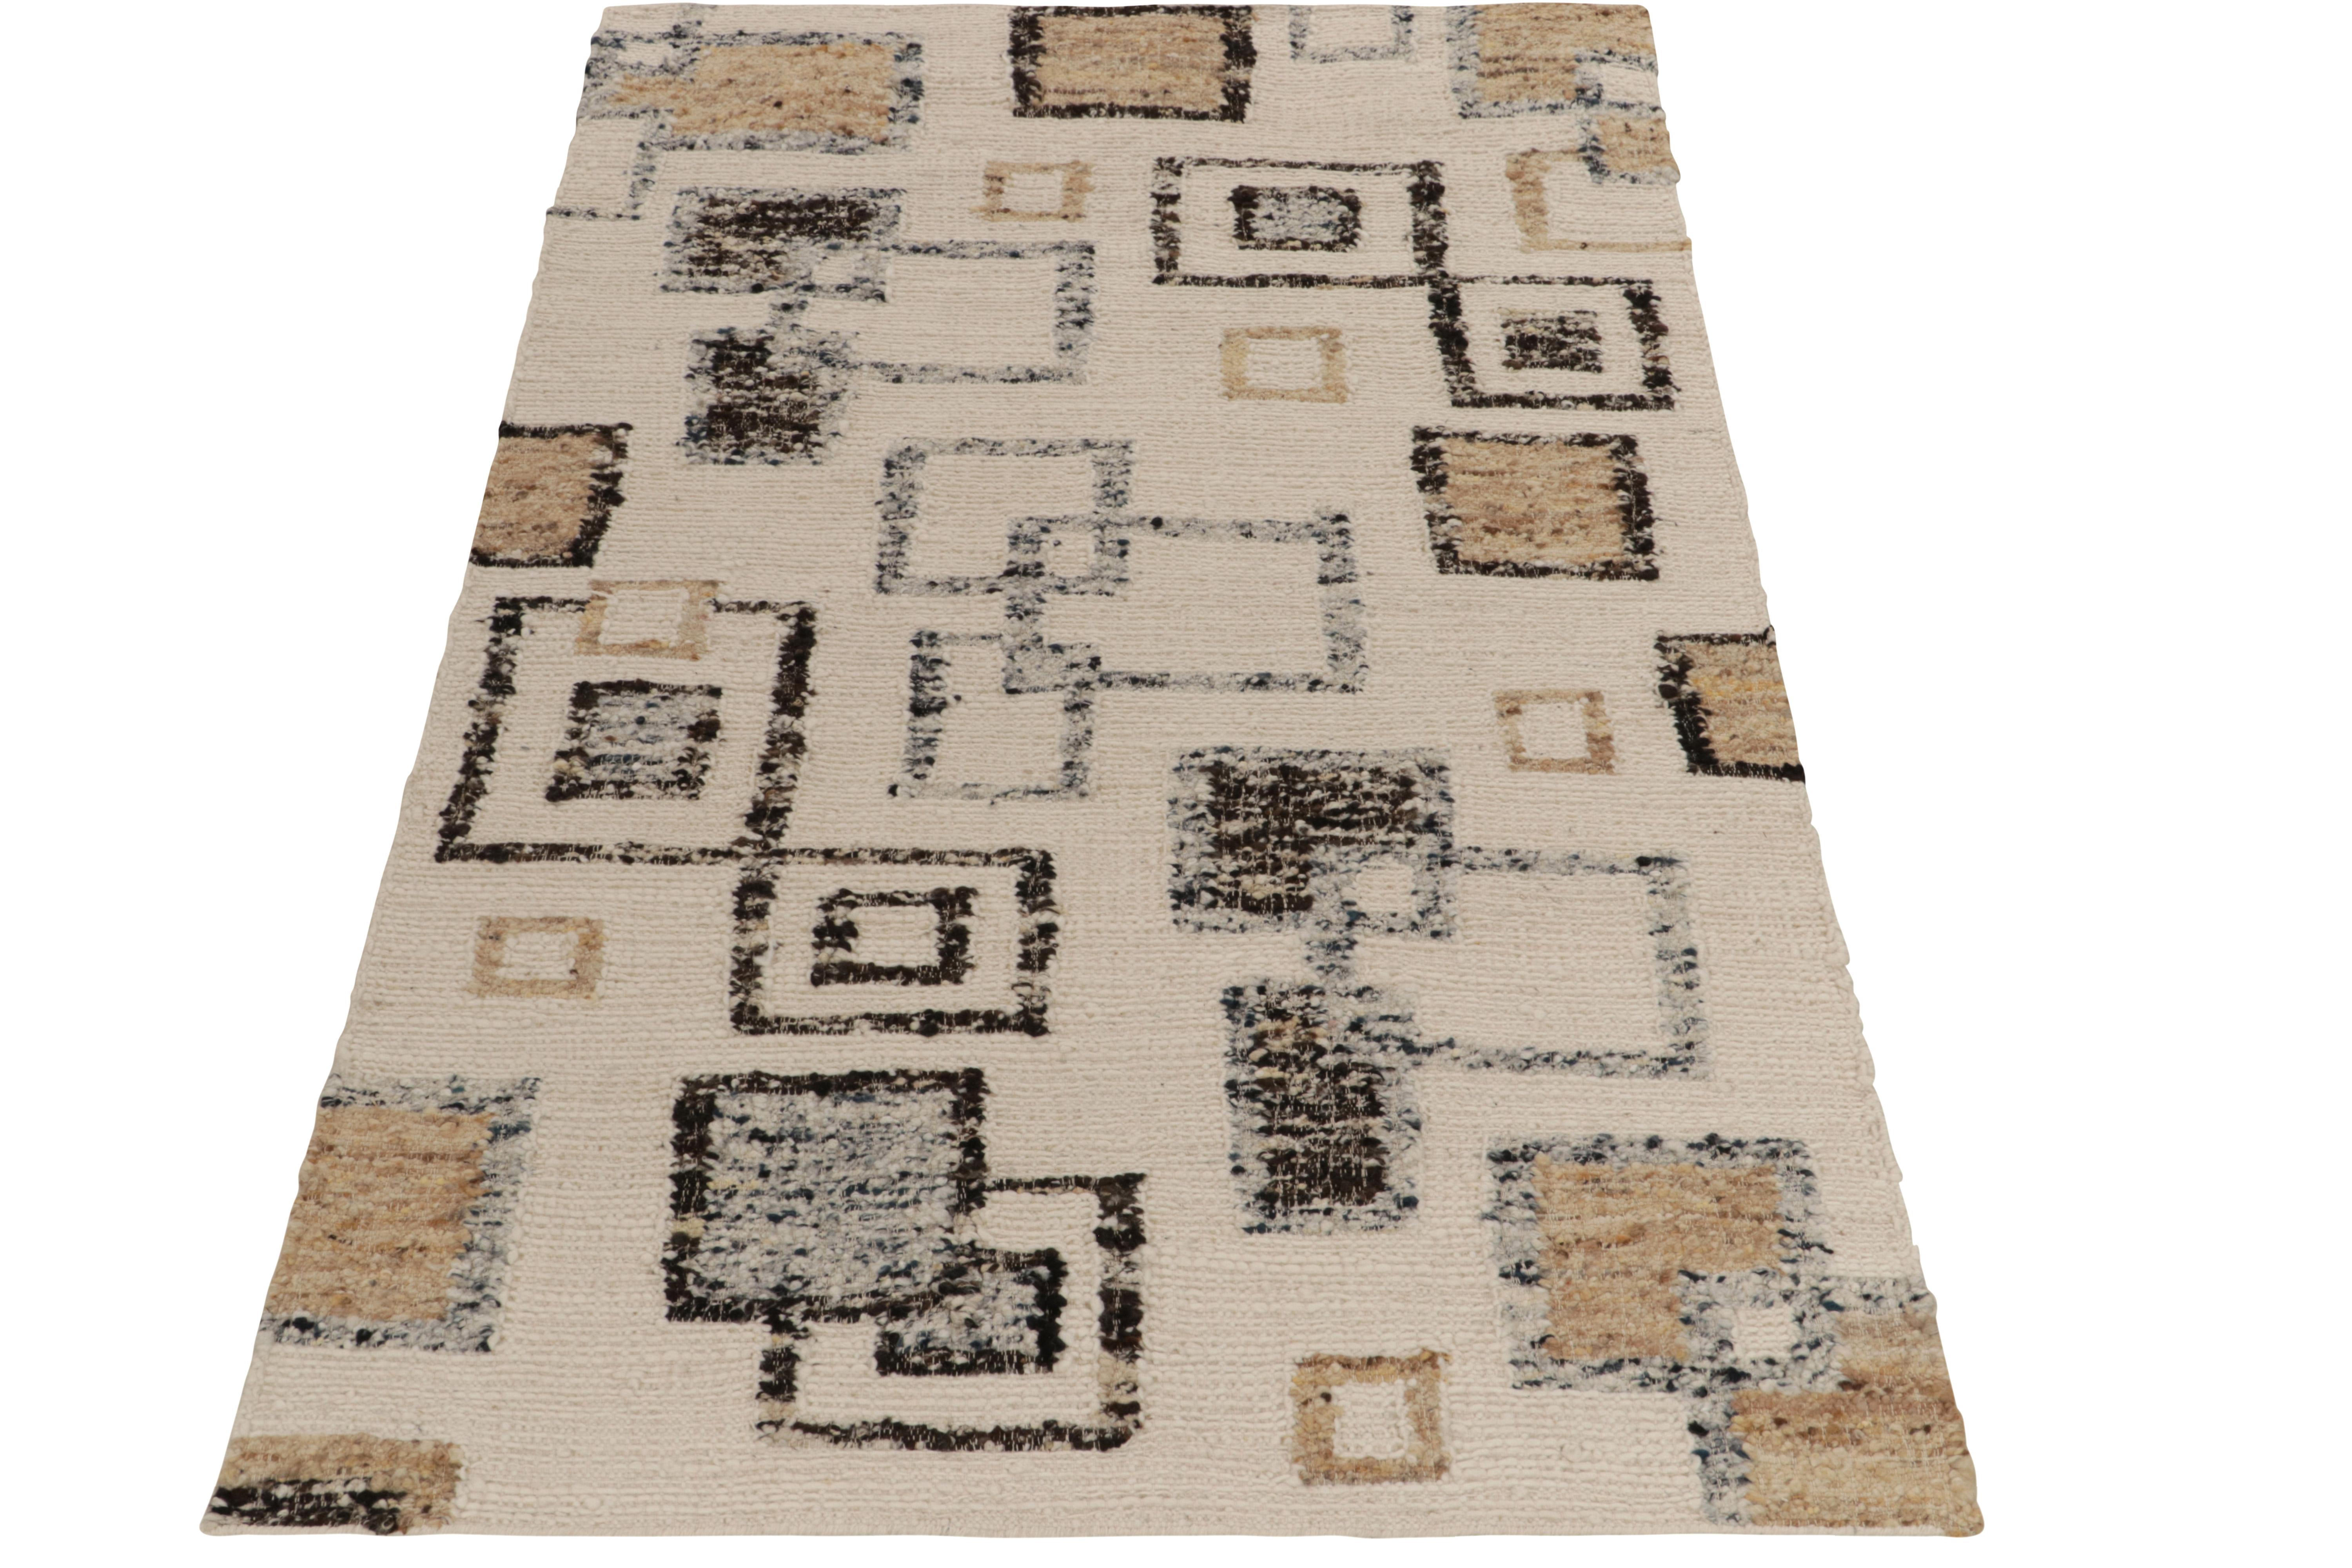 Rug & Kilim enthüllt seine Innovation in Stil und Technik mit diesem flach gewebten Teppich 5x8, der kühn den Art-Déco-Stil in noch nie dagewesenen Texturen erforscht. Der Kilim weist ein modernes geometrisches Muster in klarem Weiß, Beige-Braun,